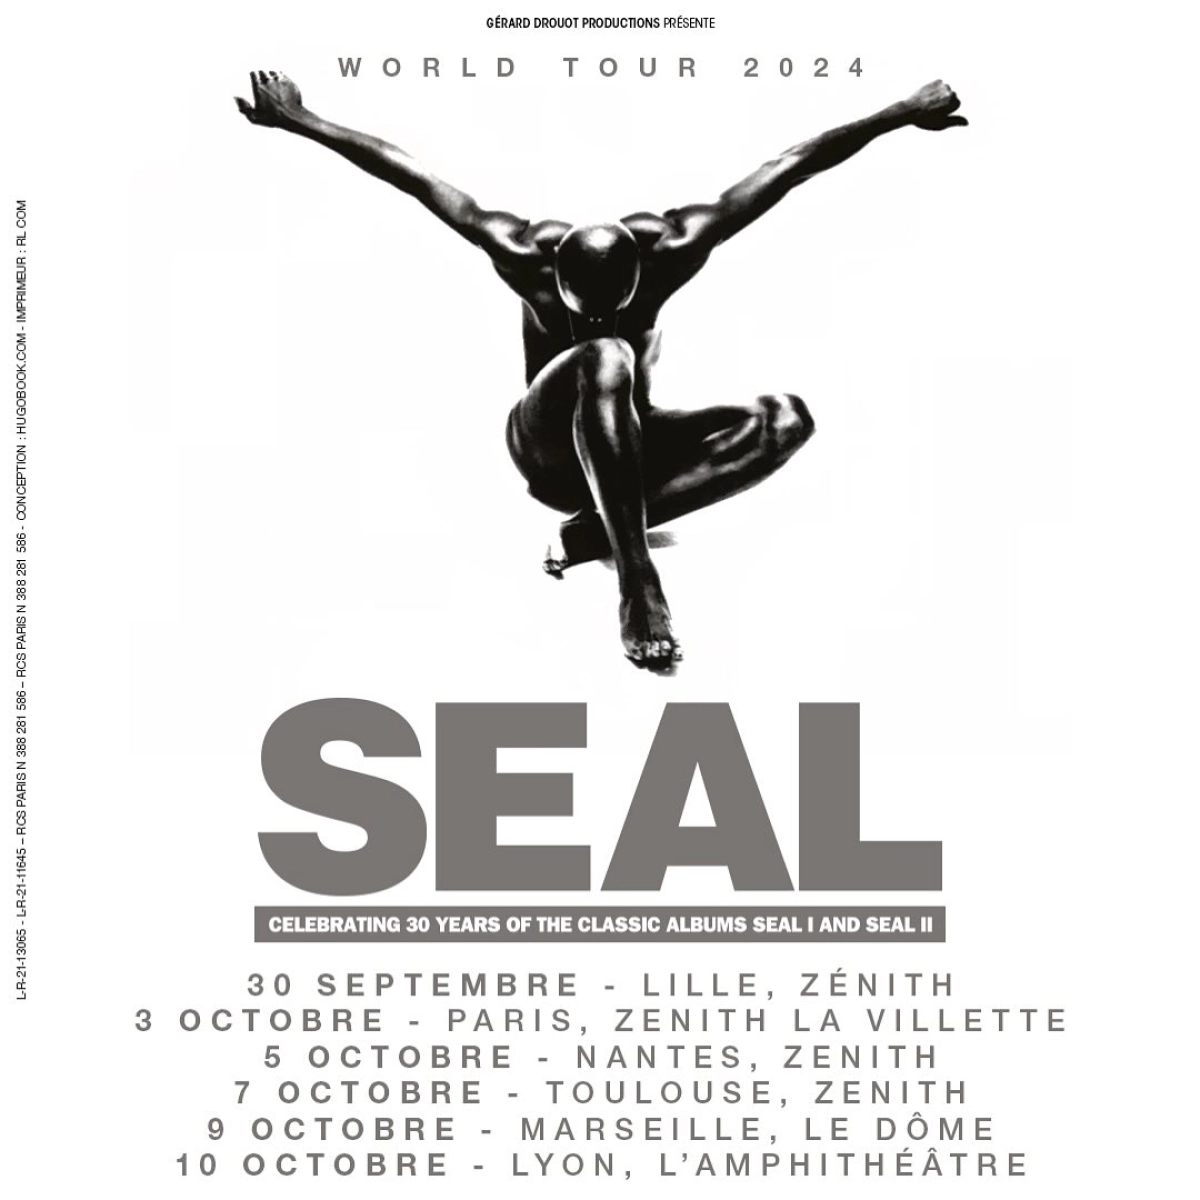 Seal in der L'amphitheatre Tickets